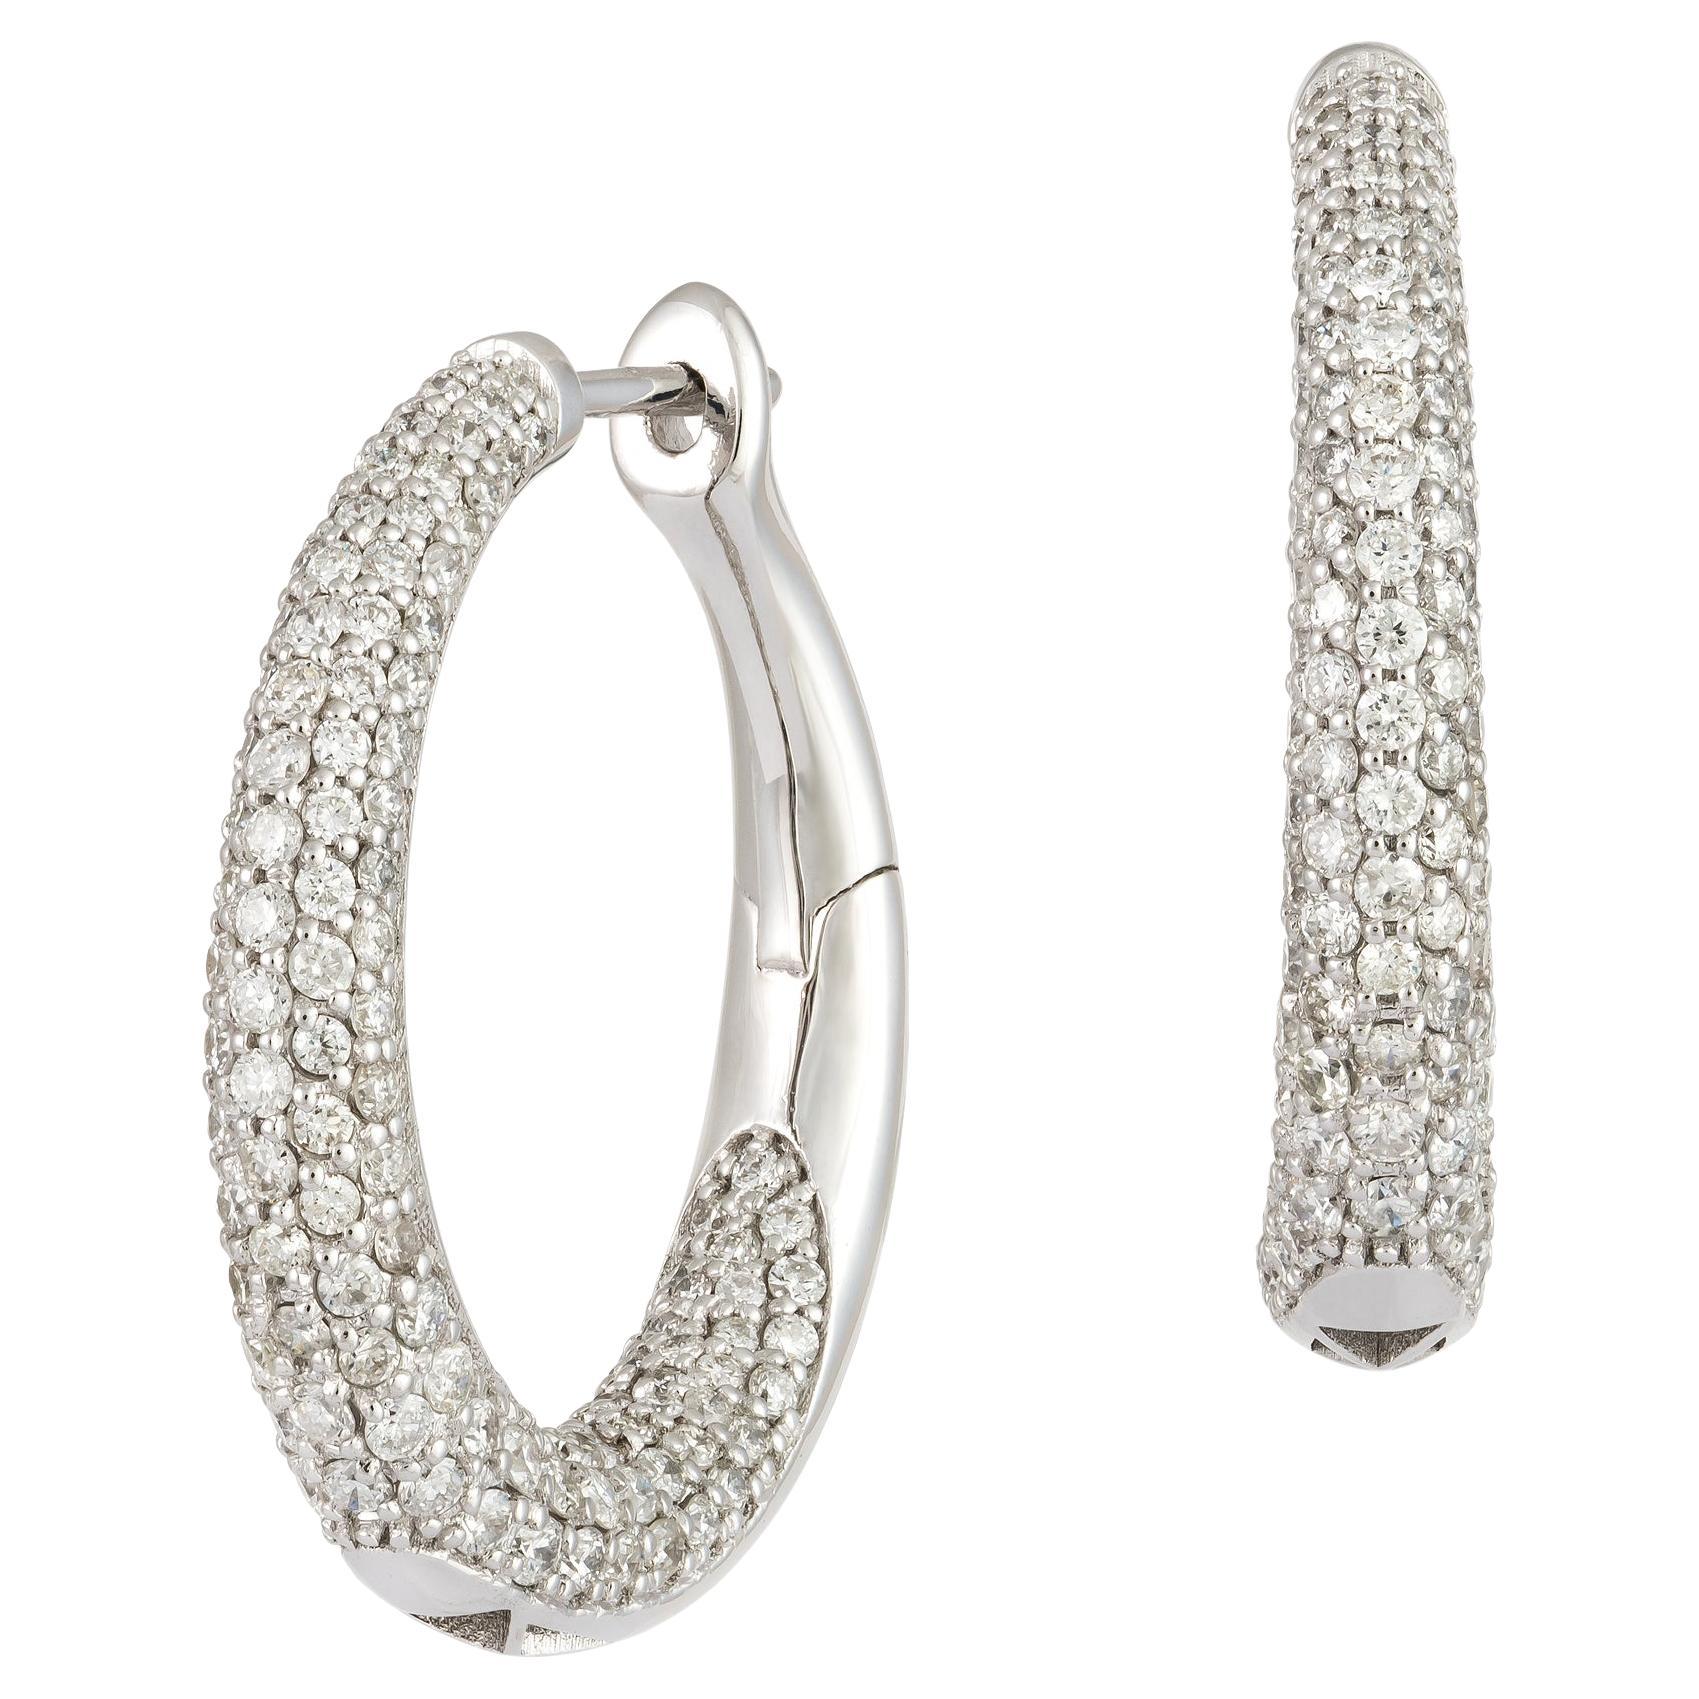 Stunning Hoop White Gold 18K Earrings Diamond for Her